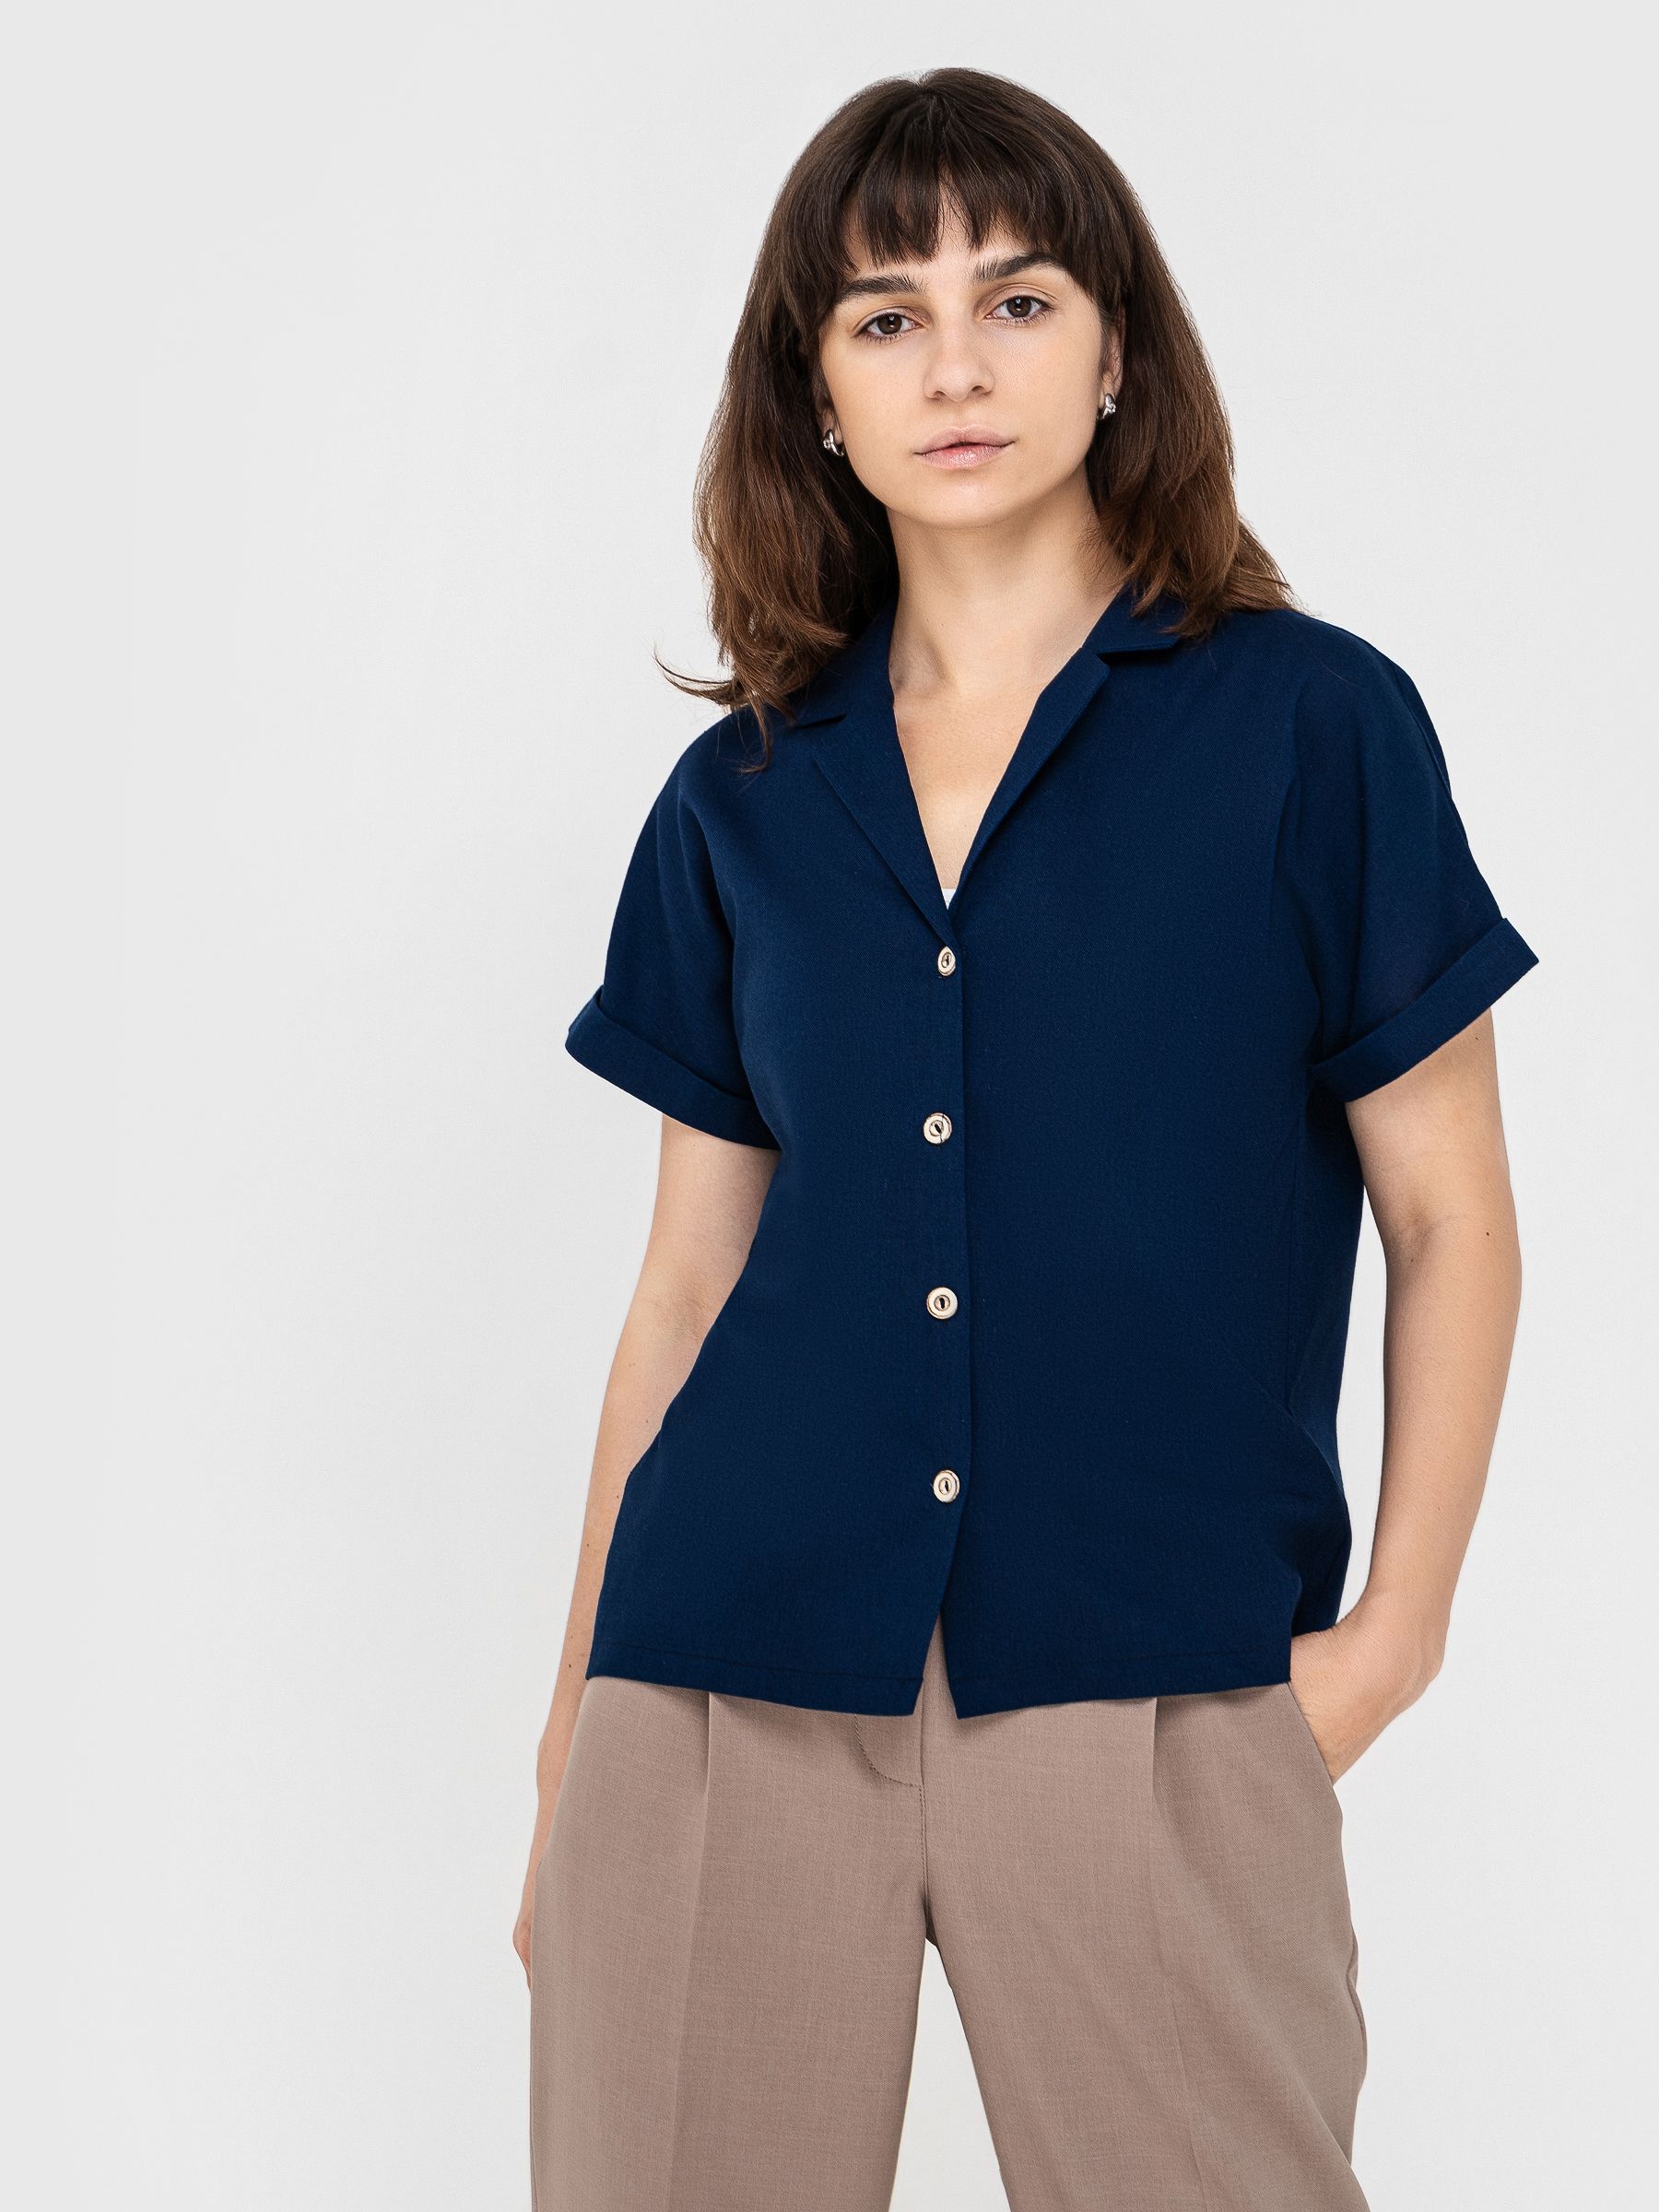 Рубашка женская AM One 6019/5 синяя 48 RU